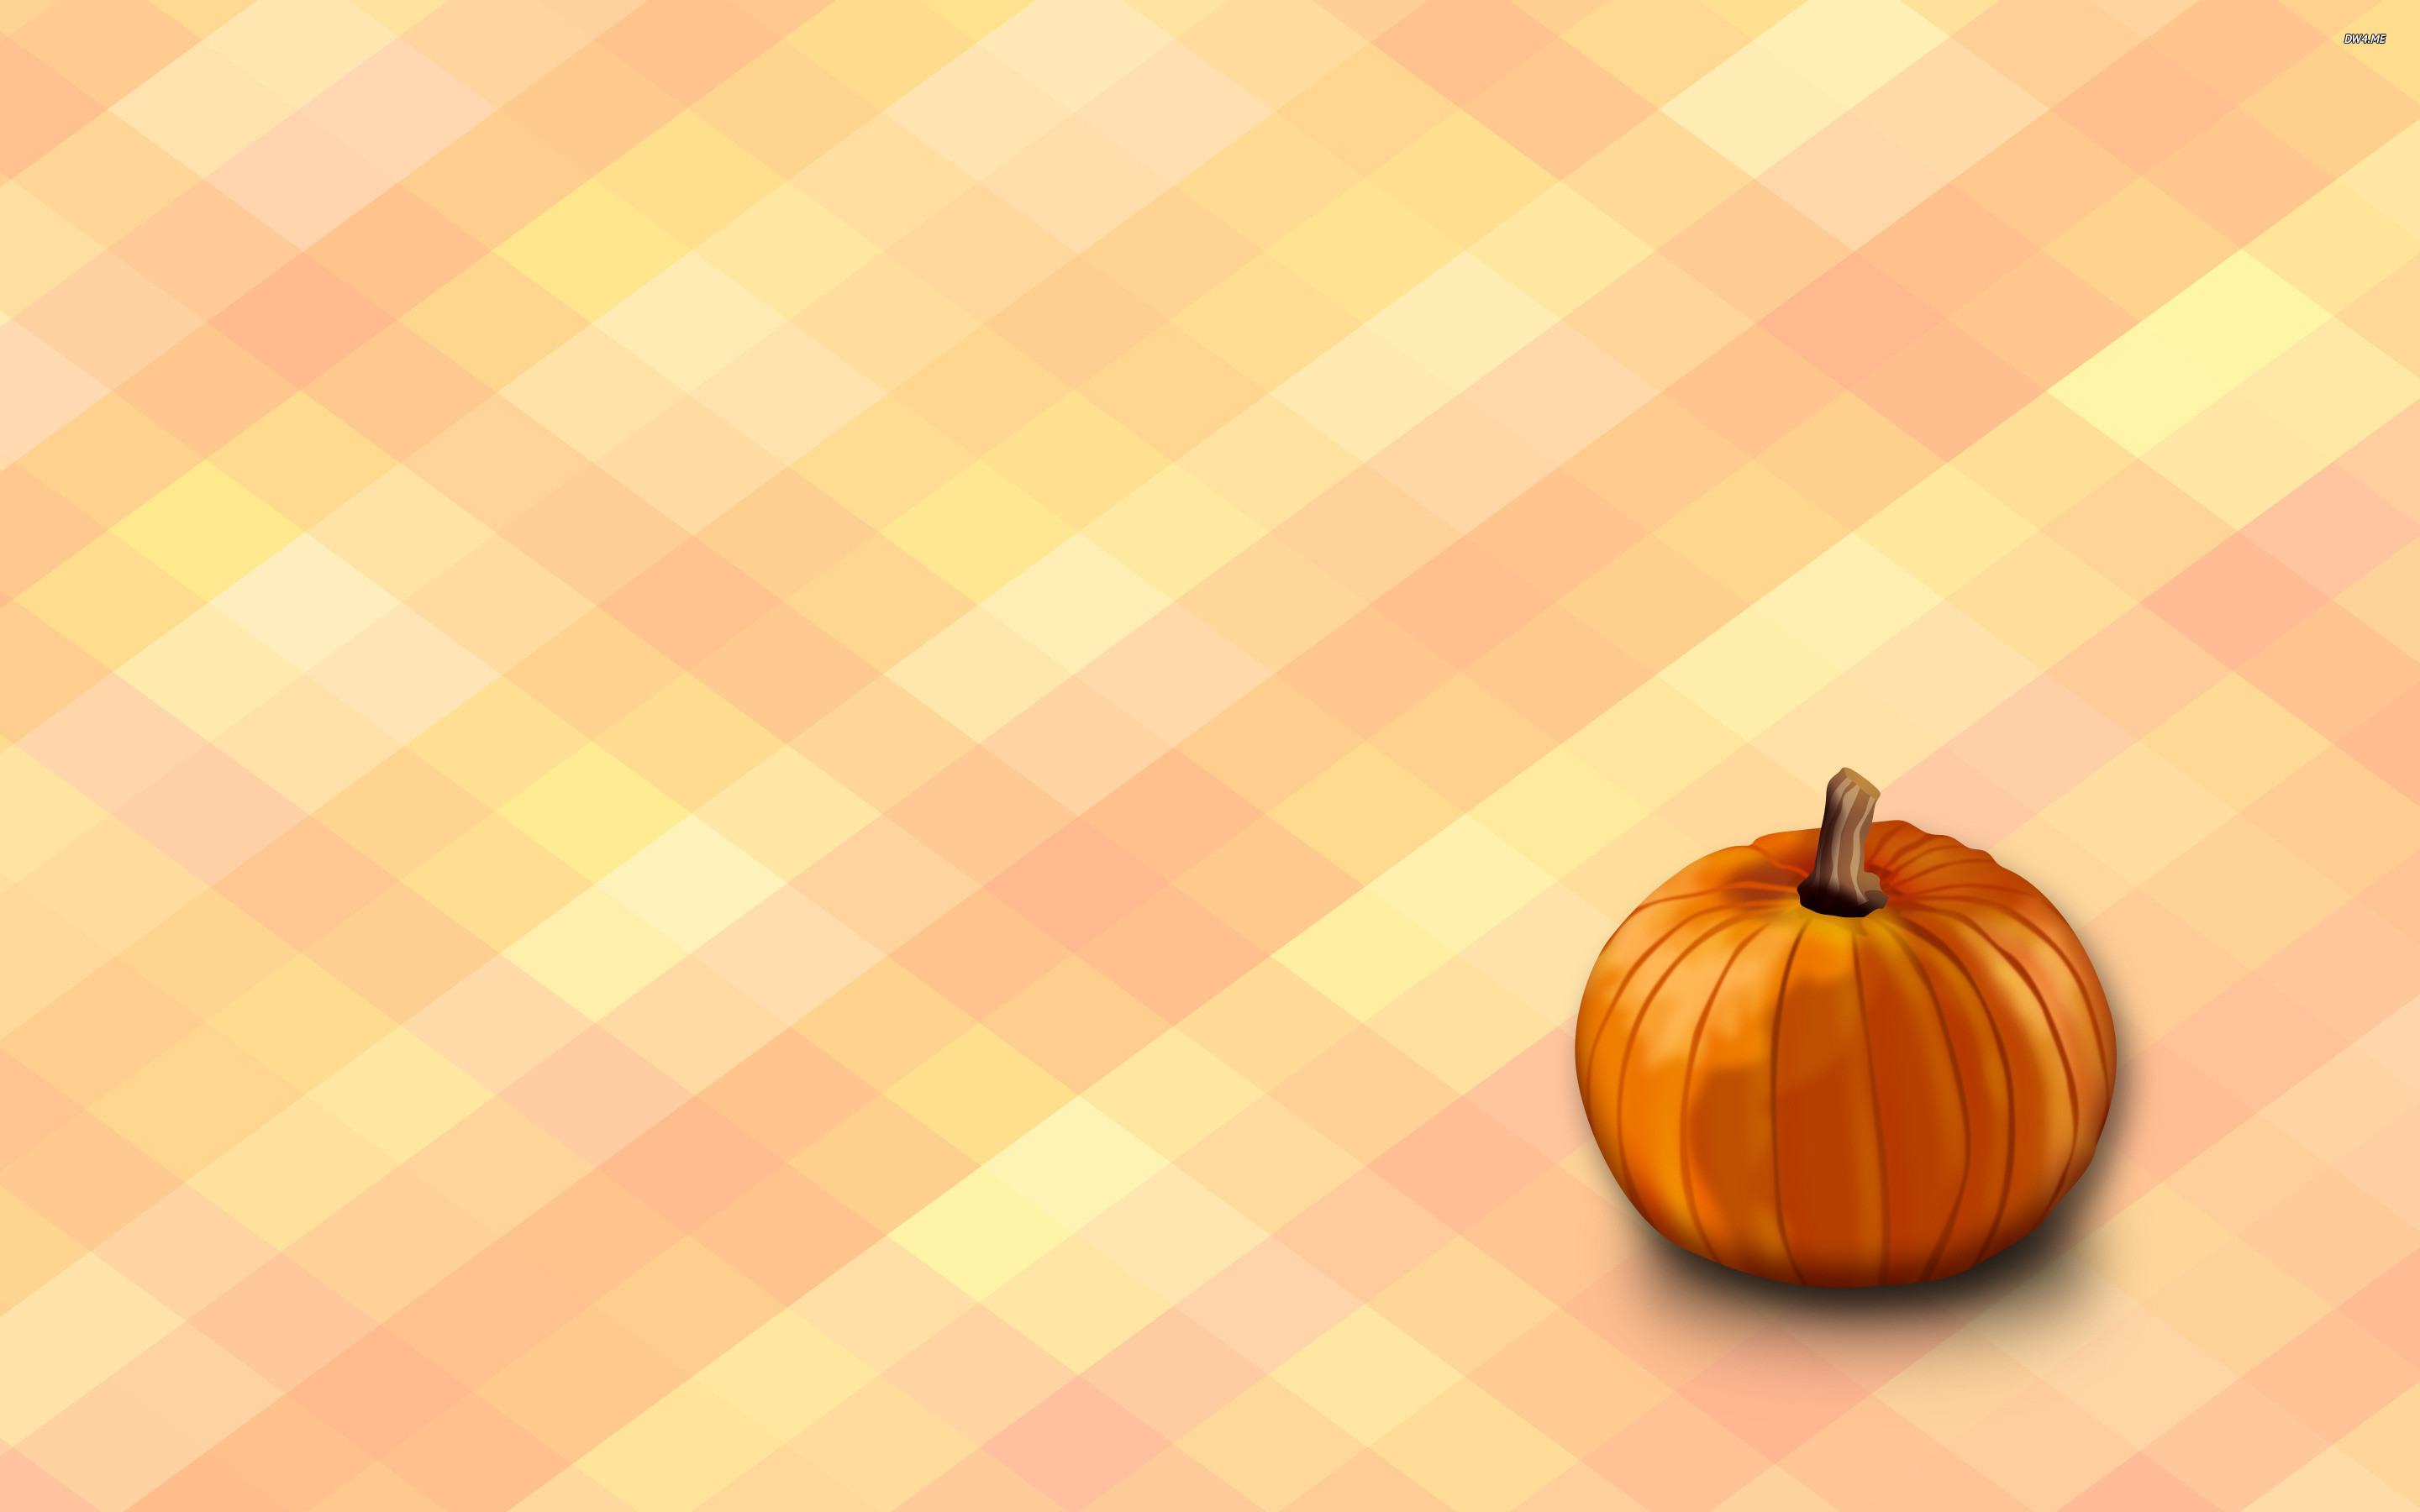 Pumpkins Wallpapers For Desktop 55 Pictures